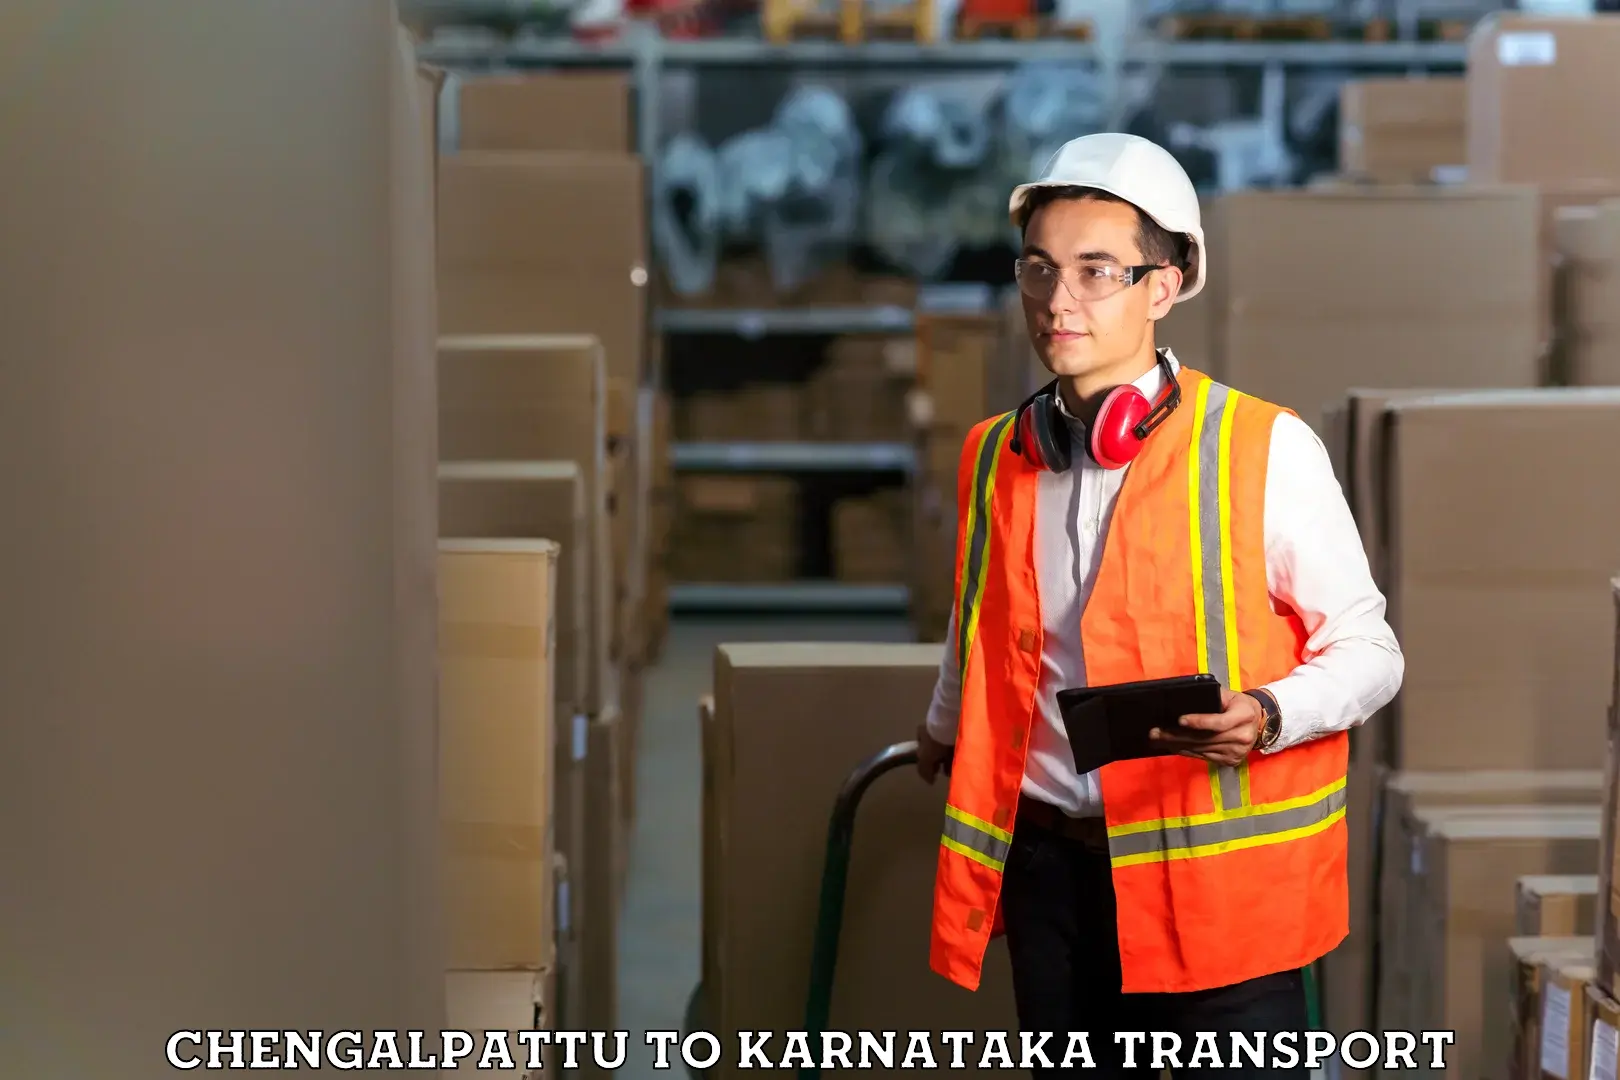 Pick up transport service Chengalpattu to Karnataka